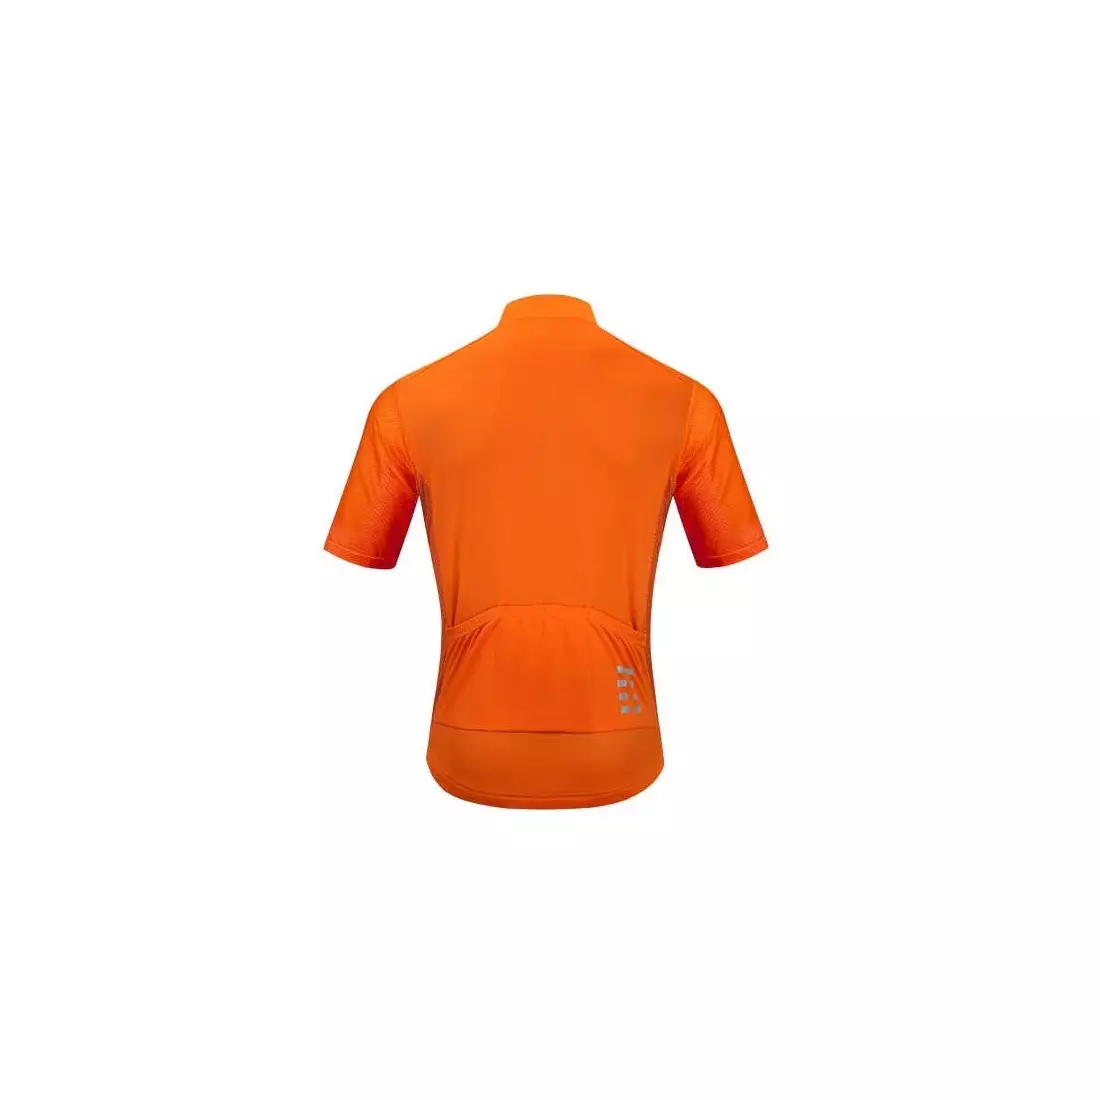 WOSAWE BL247-O férfi rövid ujjú kerékpáros mez, narancssárga